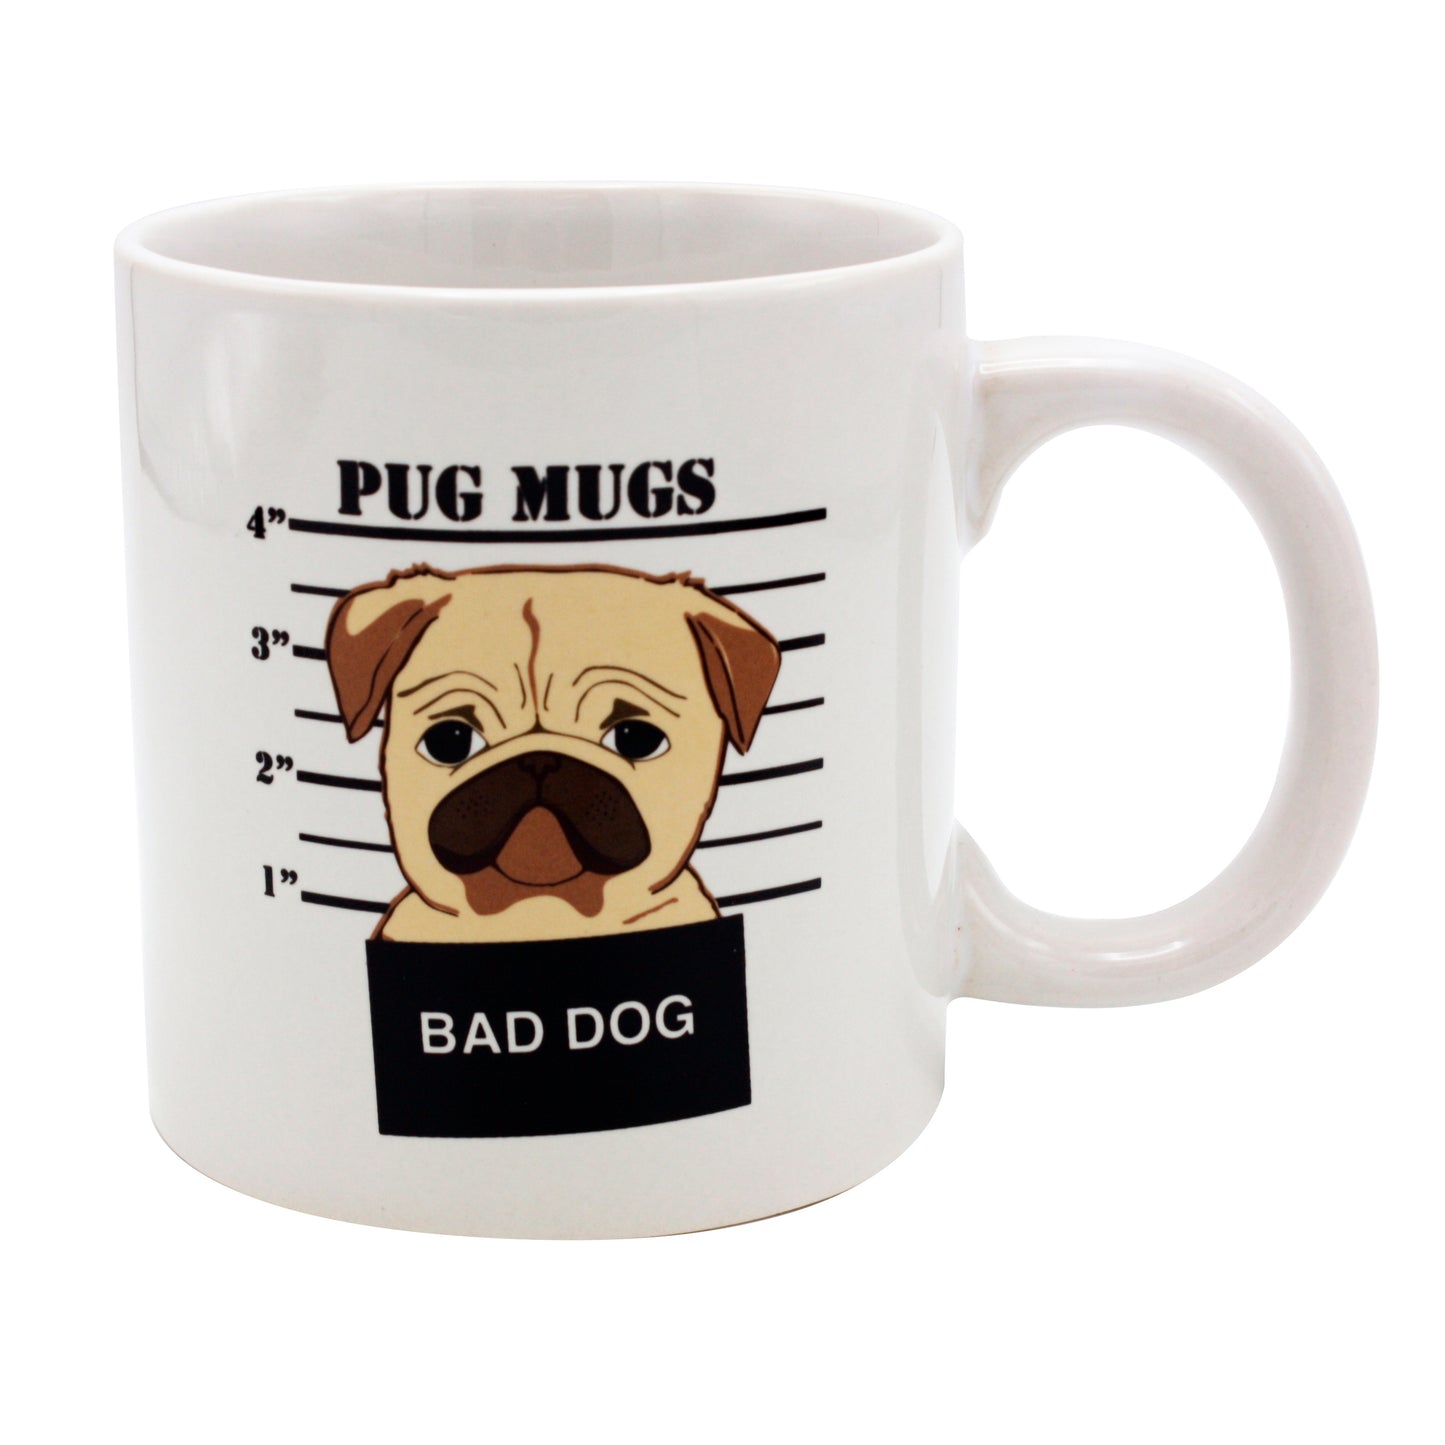 Giant Bad Dog Pug Mug